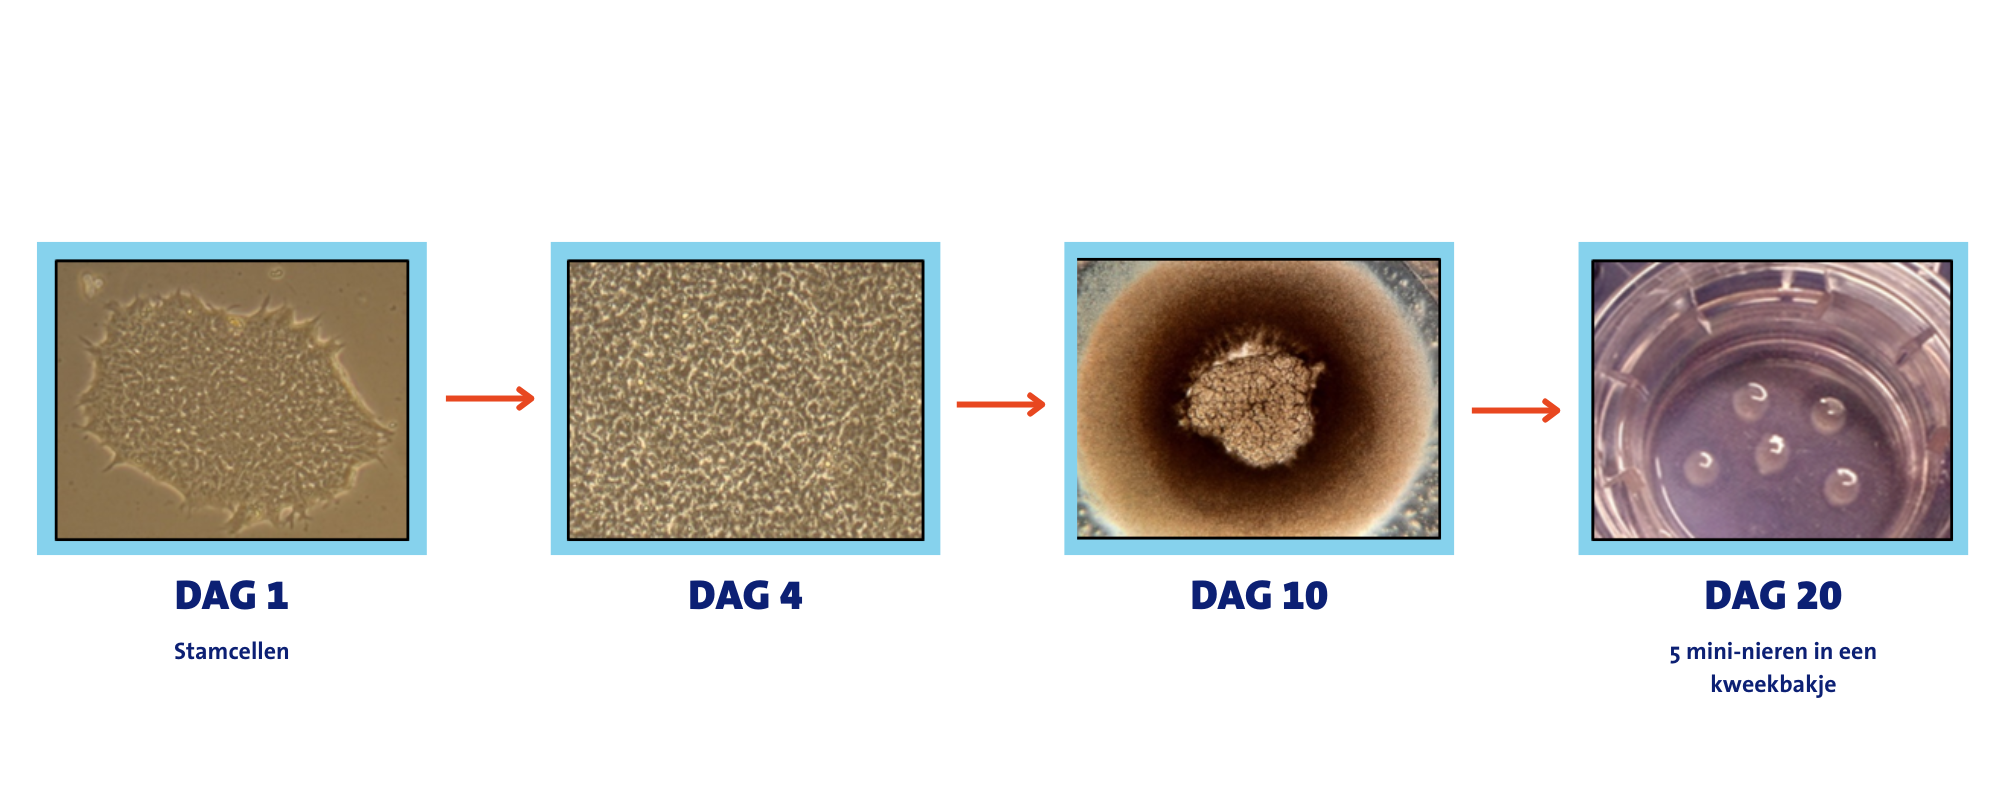 Kweken van mini-nieren vanuit menselijke stamcellen